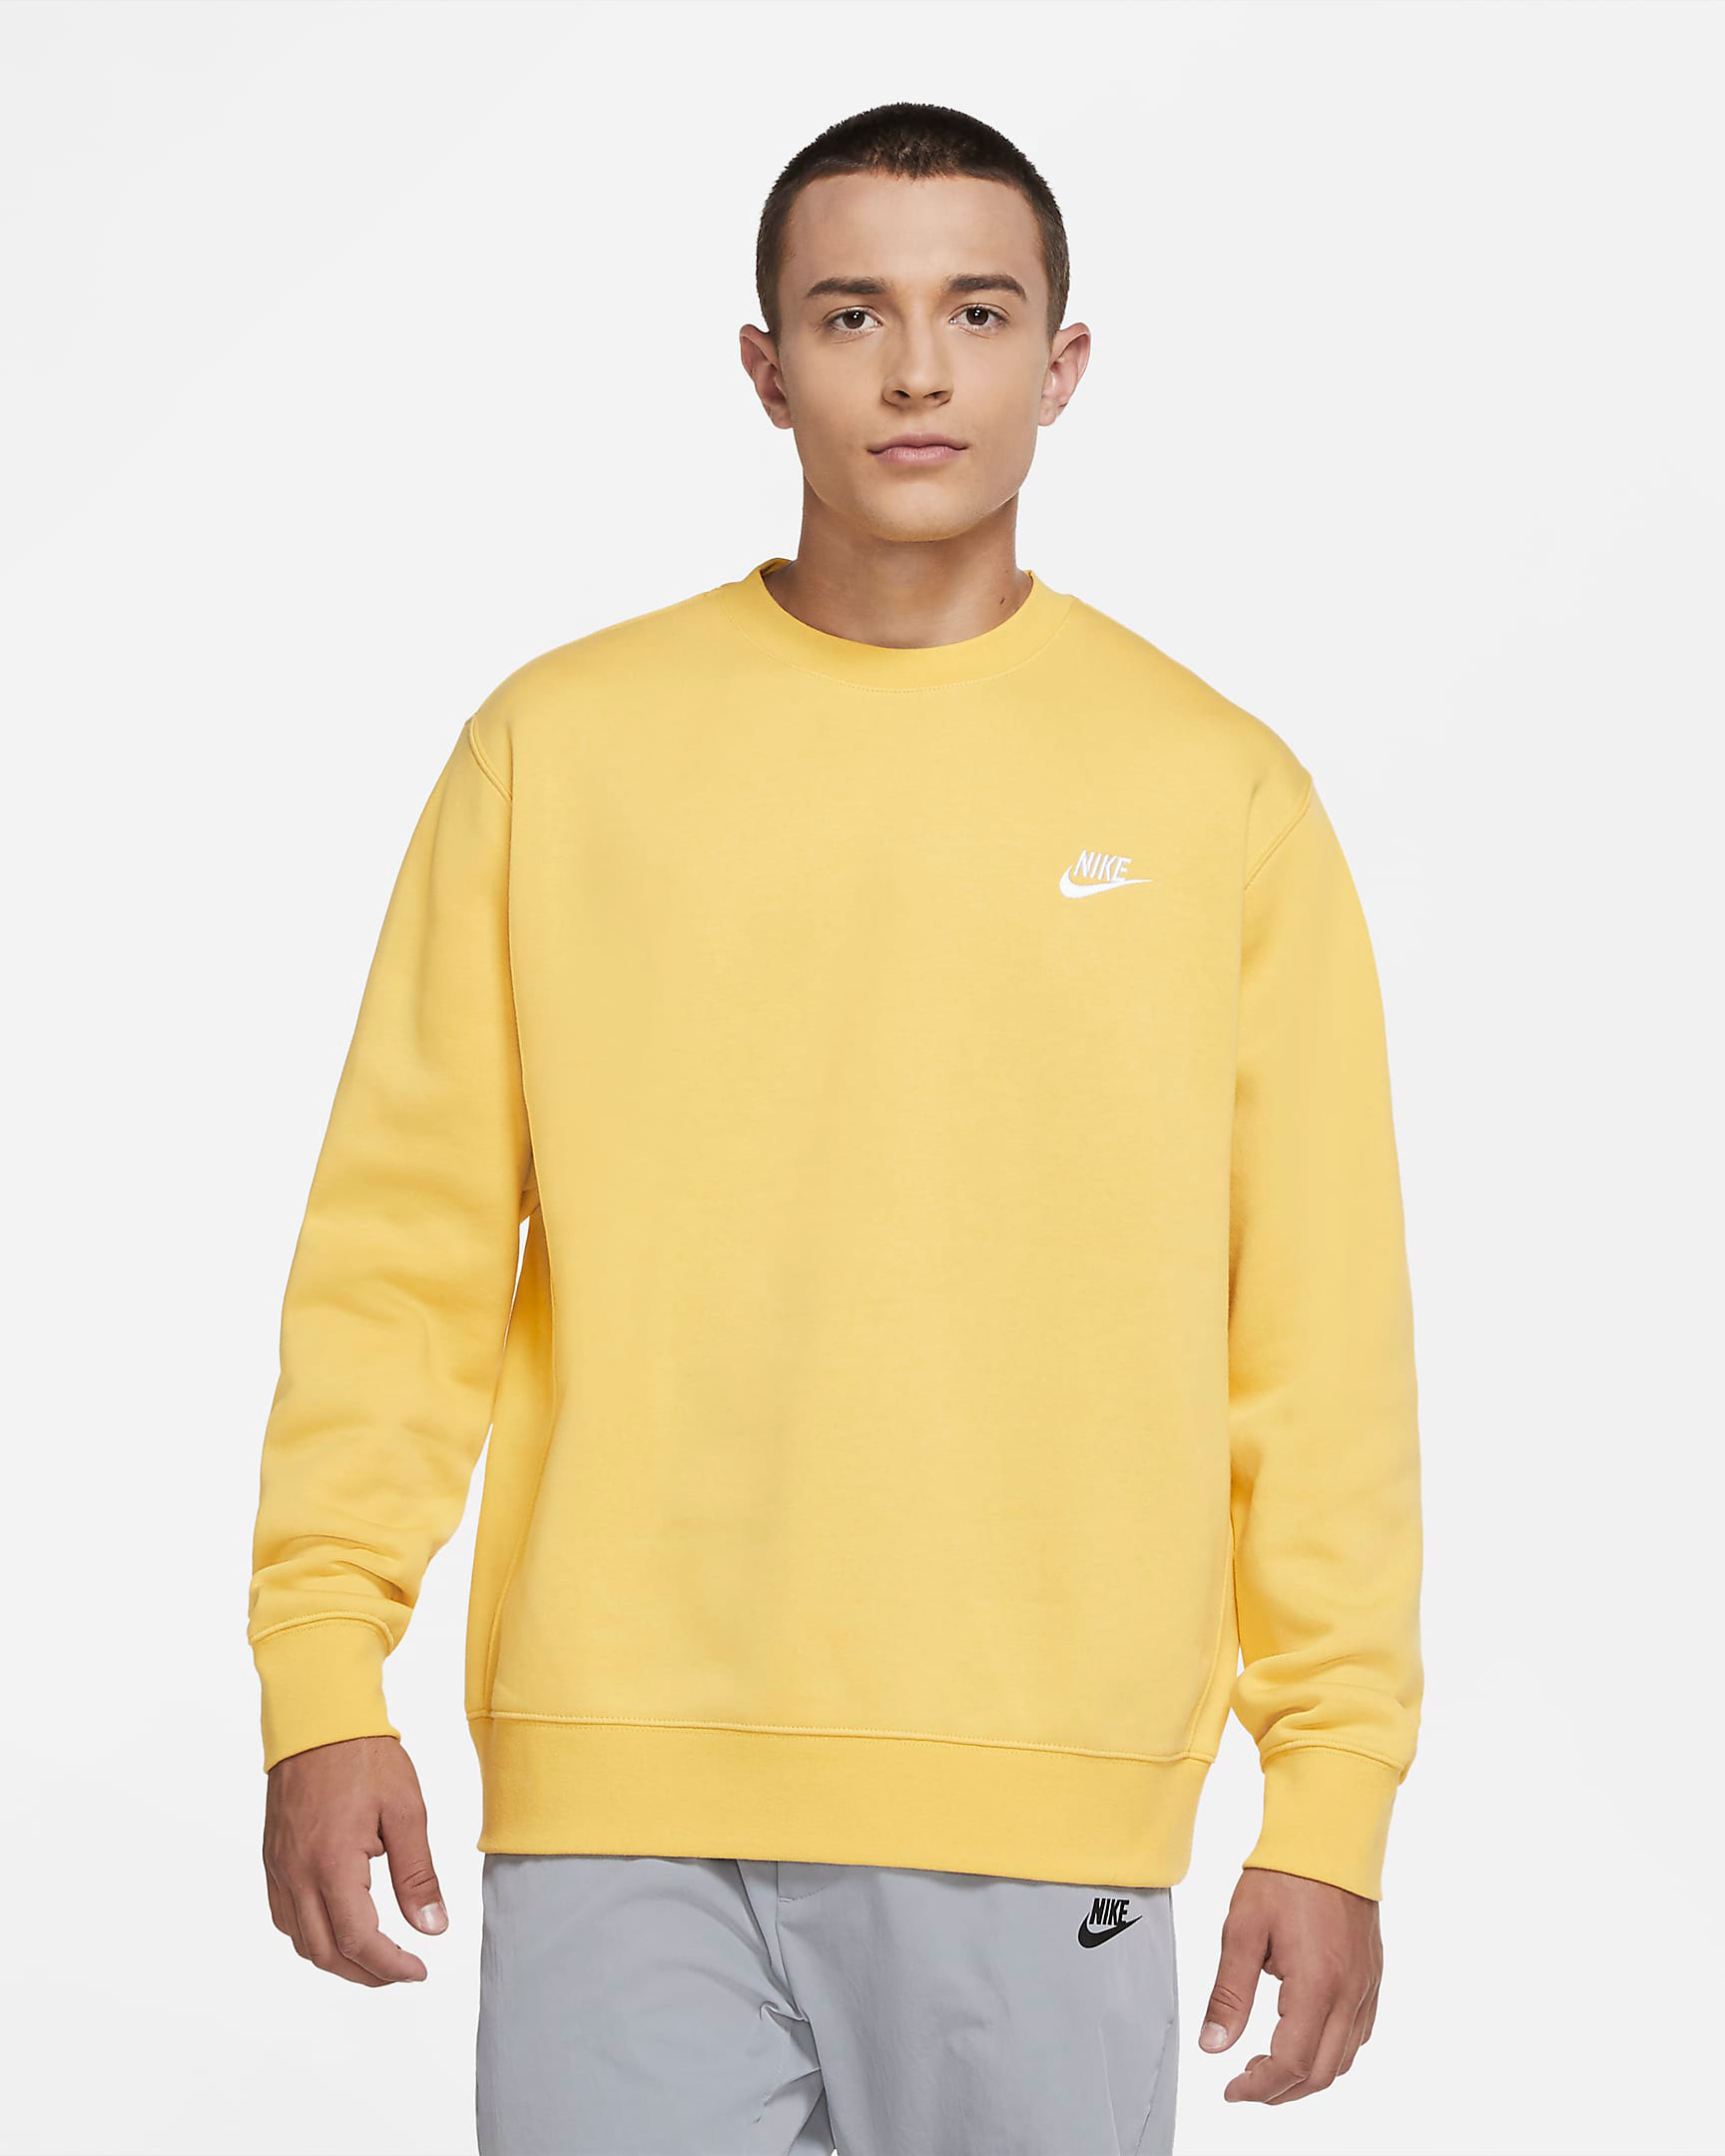 nike-air-max-1-lemonade-yellow-club-sweatshirt